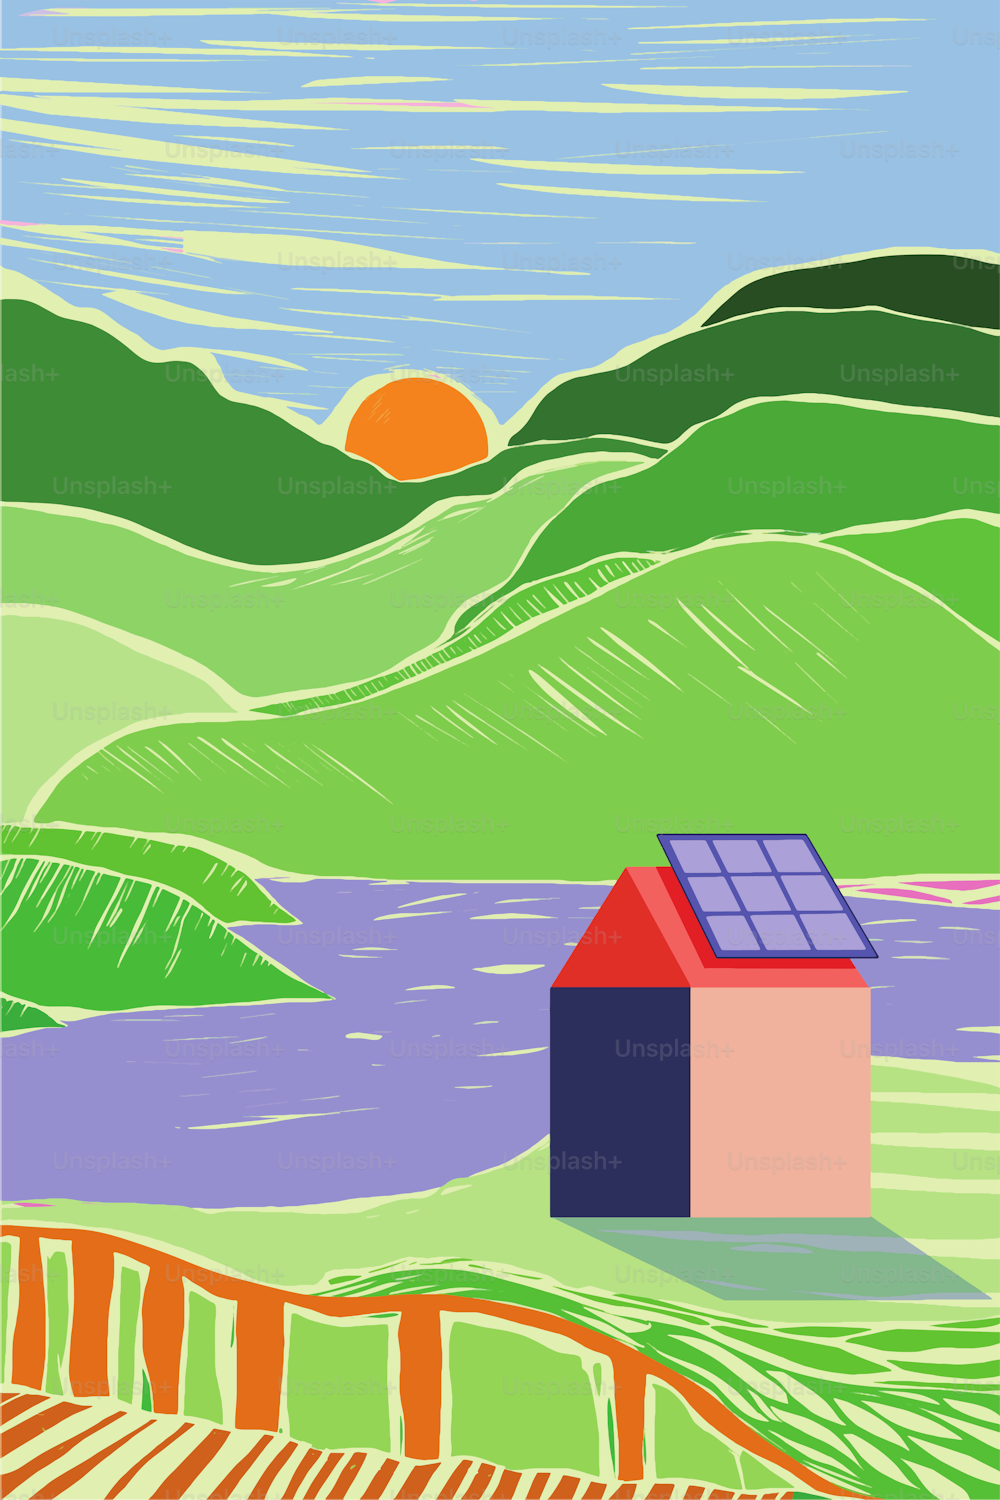 Un pequeño pueblo que se vuelve ecológico y sostenible mediante la instalación de paneles solares en los tejados. Estilo de grabado